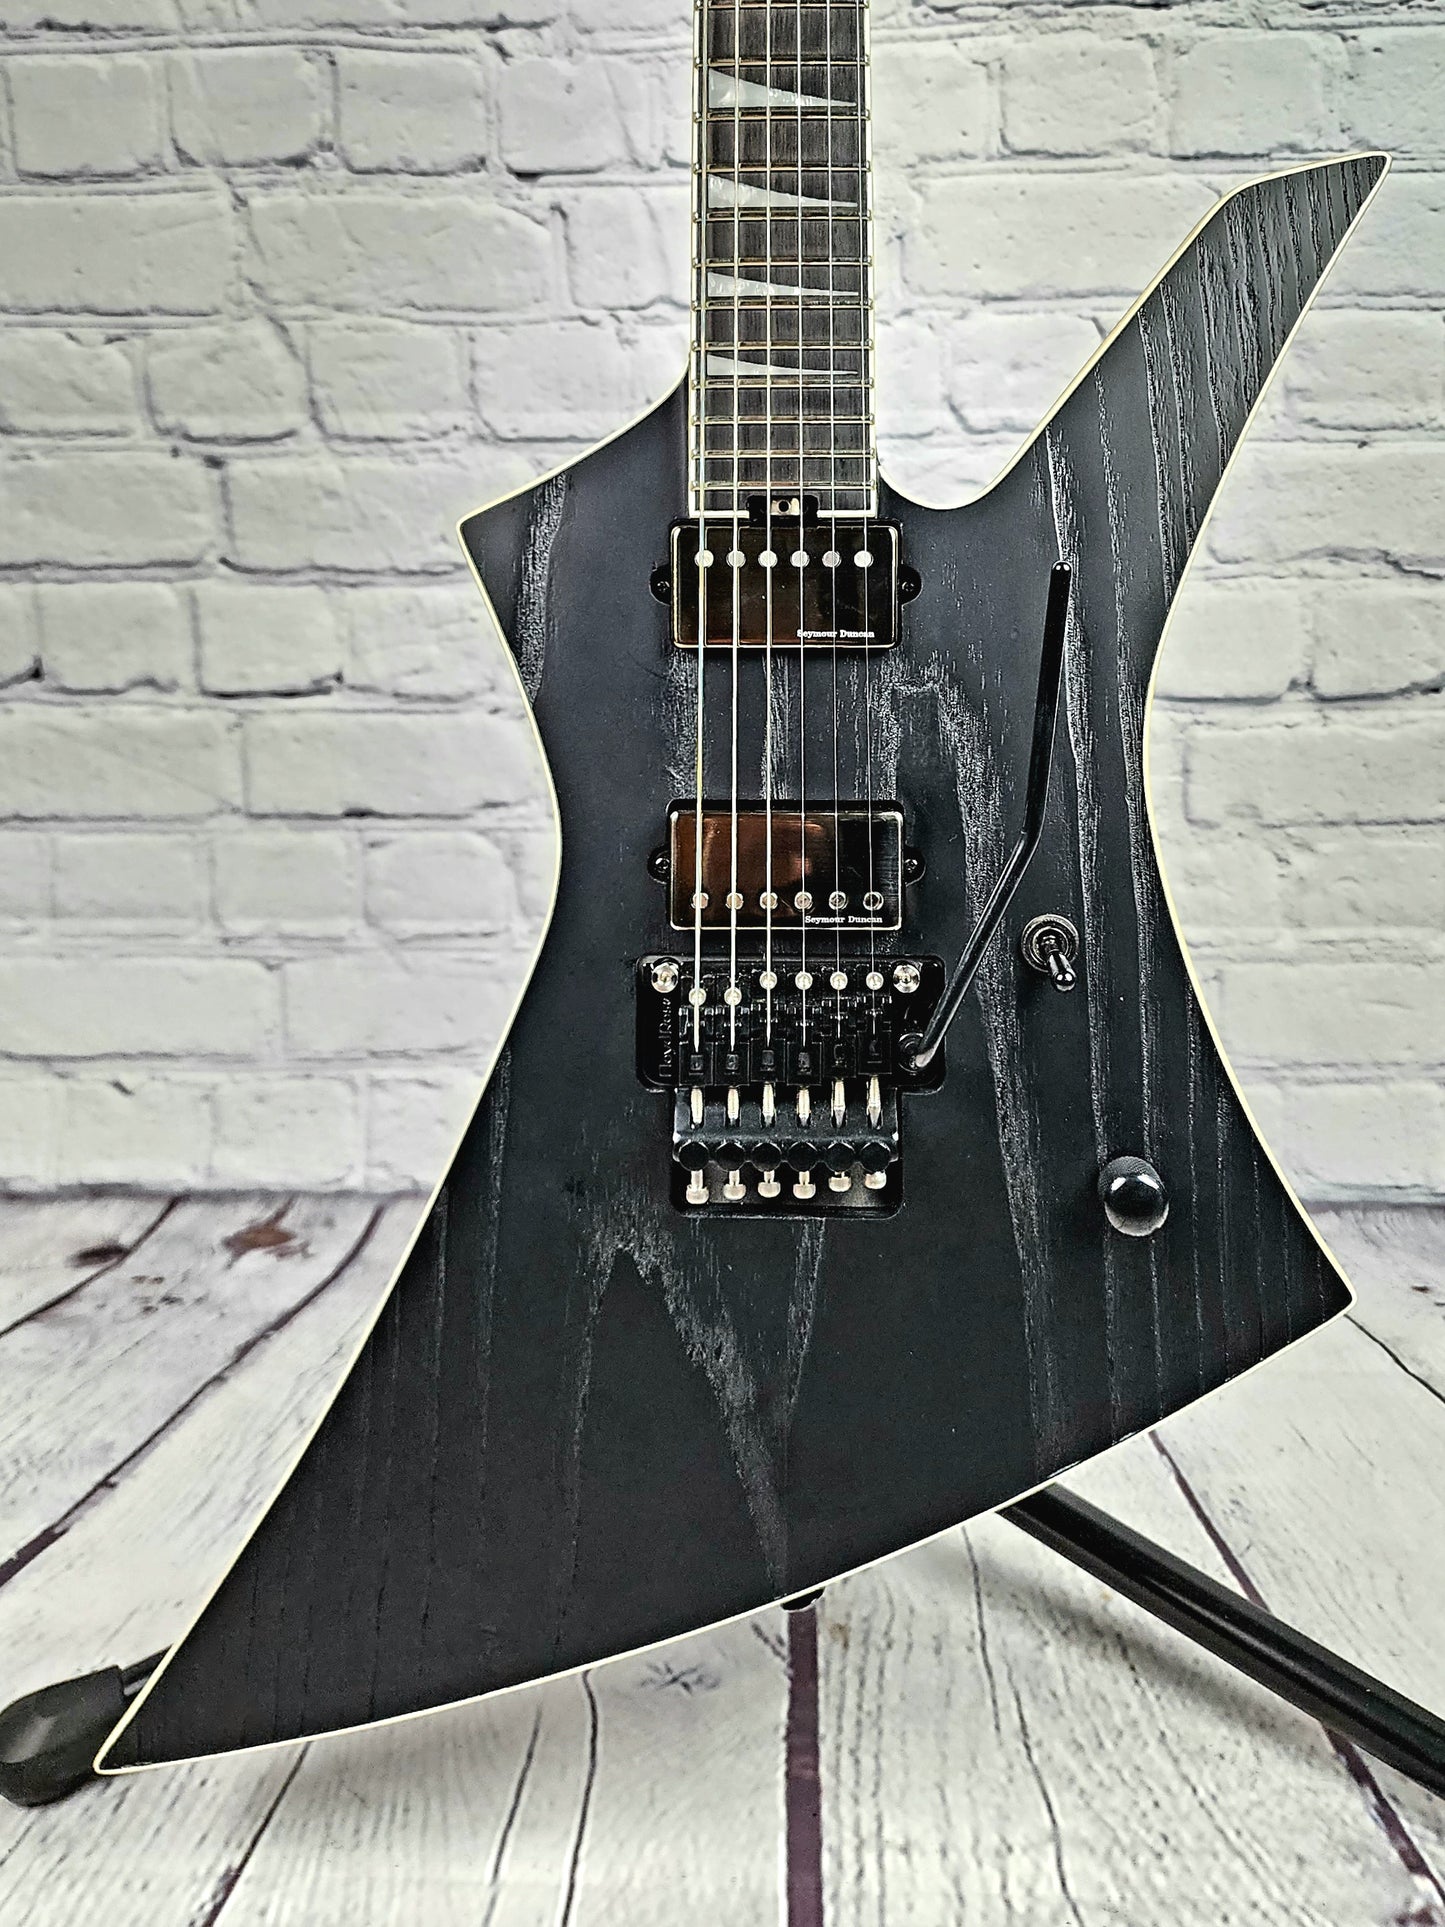 USED Jackson Kelly Jeff Loomis Signature Electric Guitar Sandblasted Satin Black